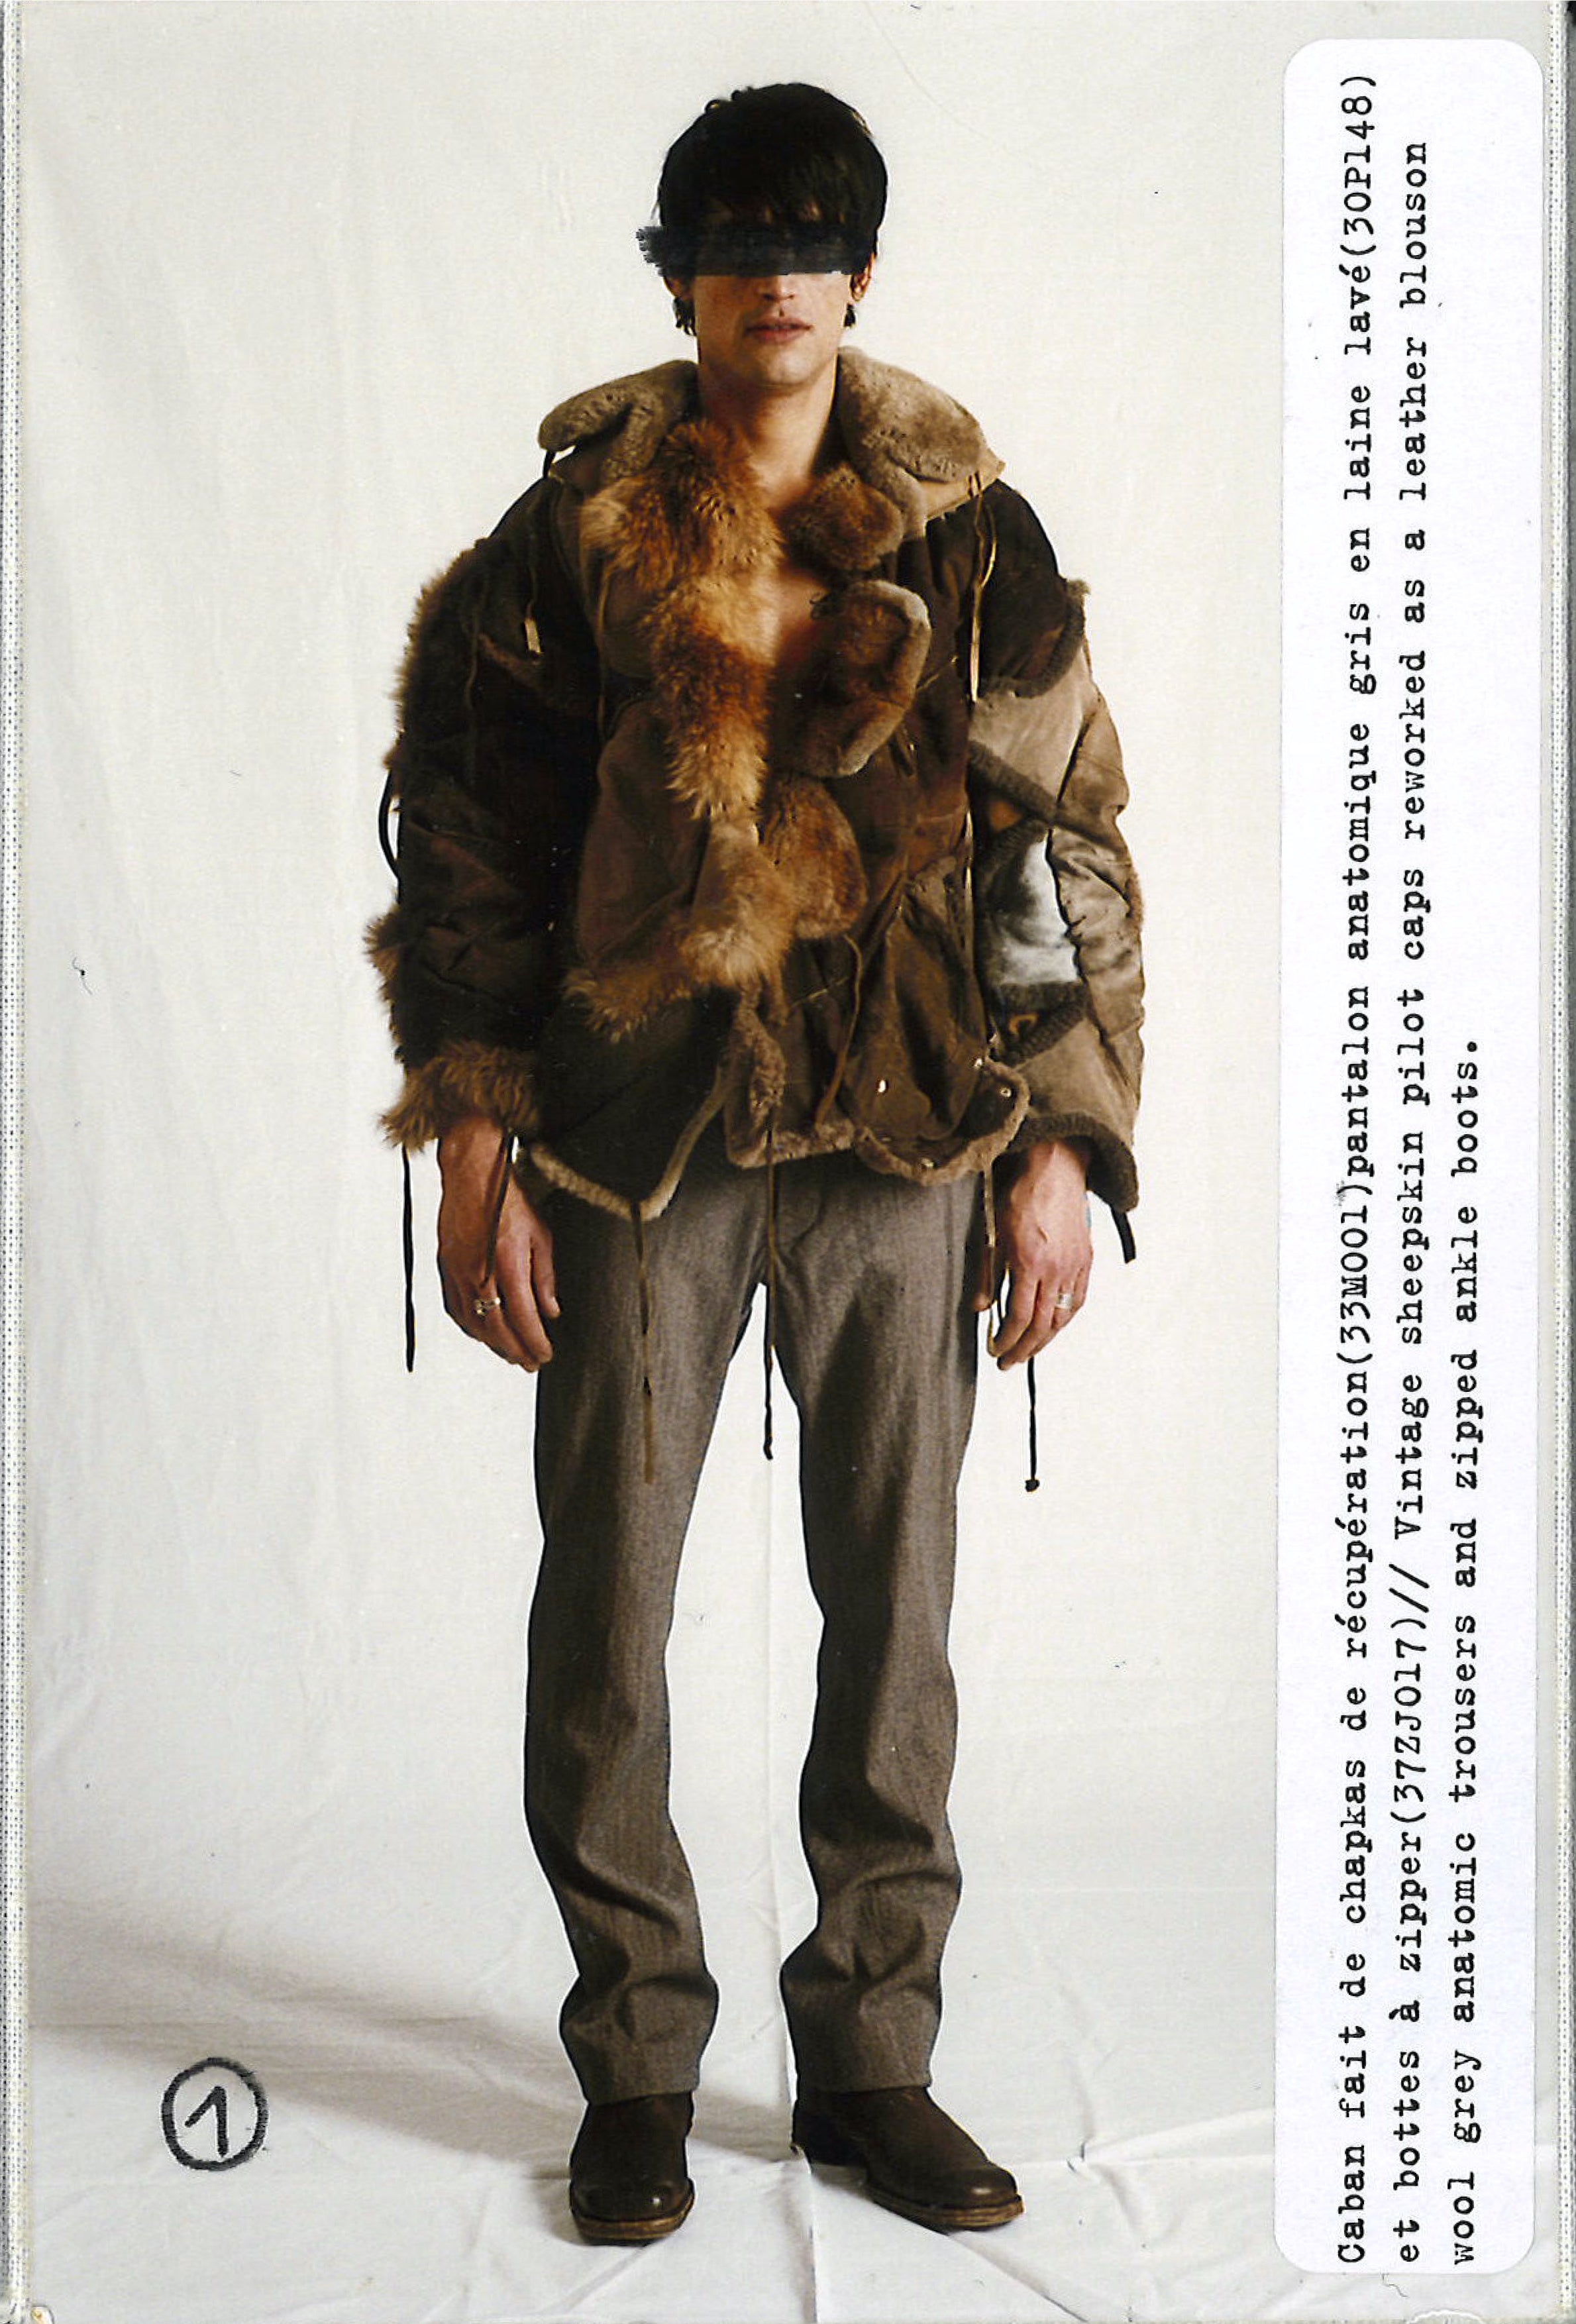 Maison Martin Margiela Lookbook
Menswear Collection Autumn/Winter 2005-06